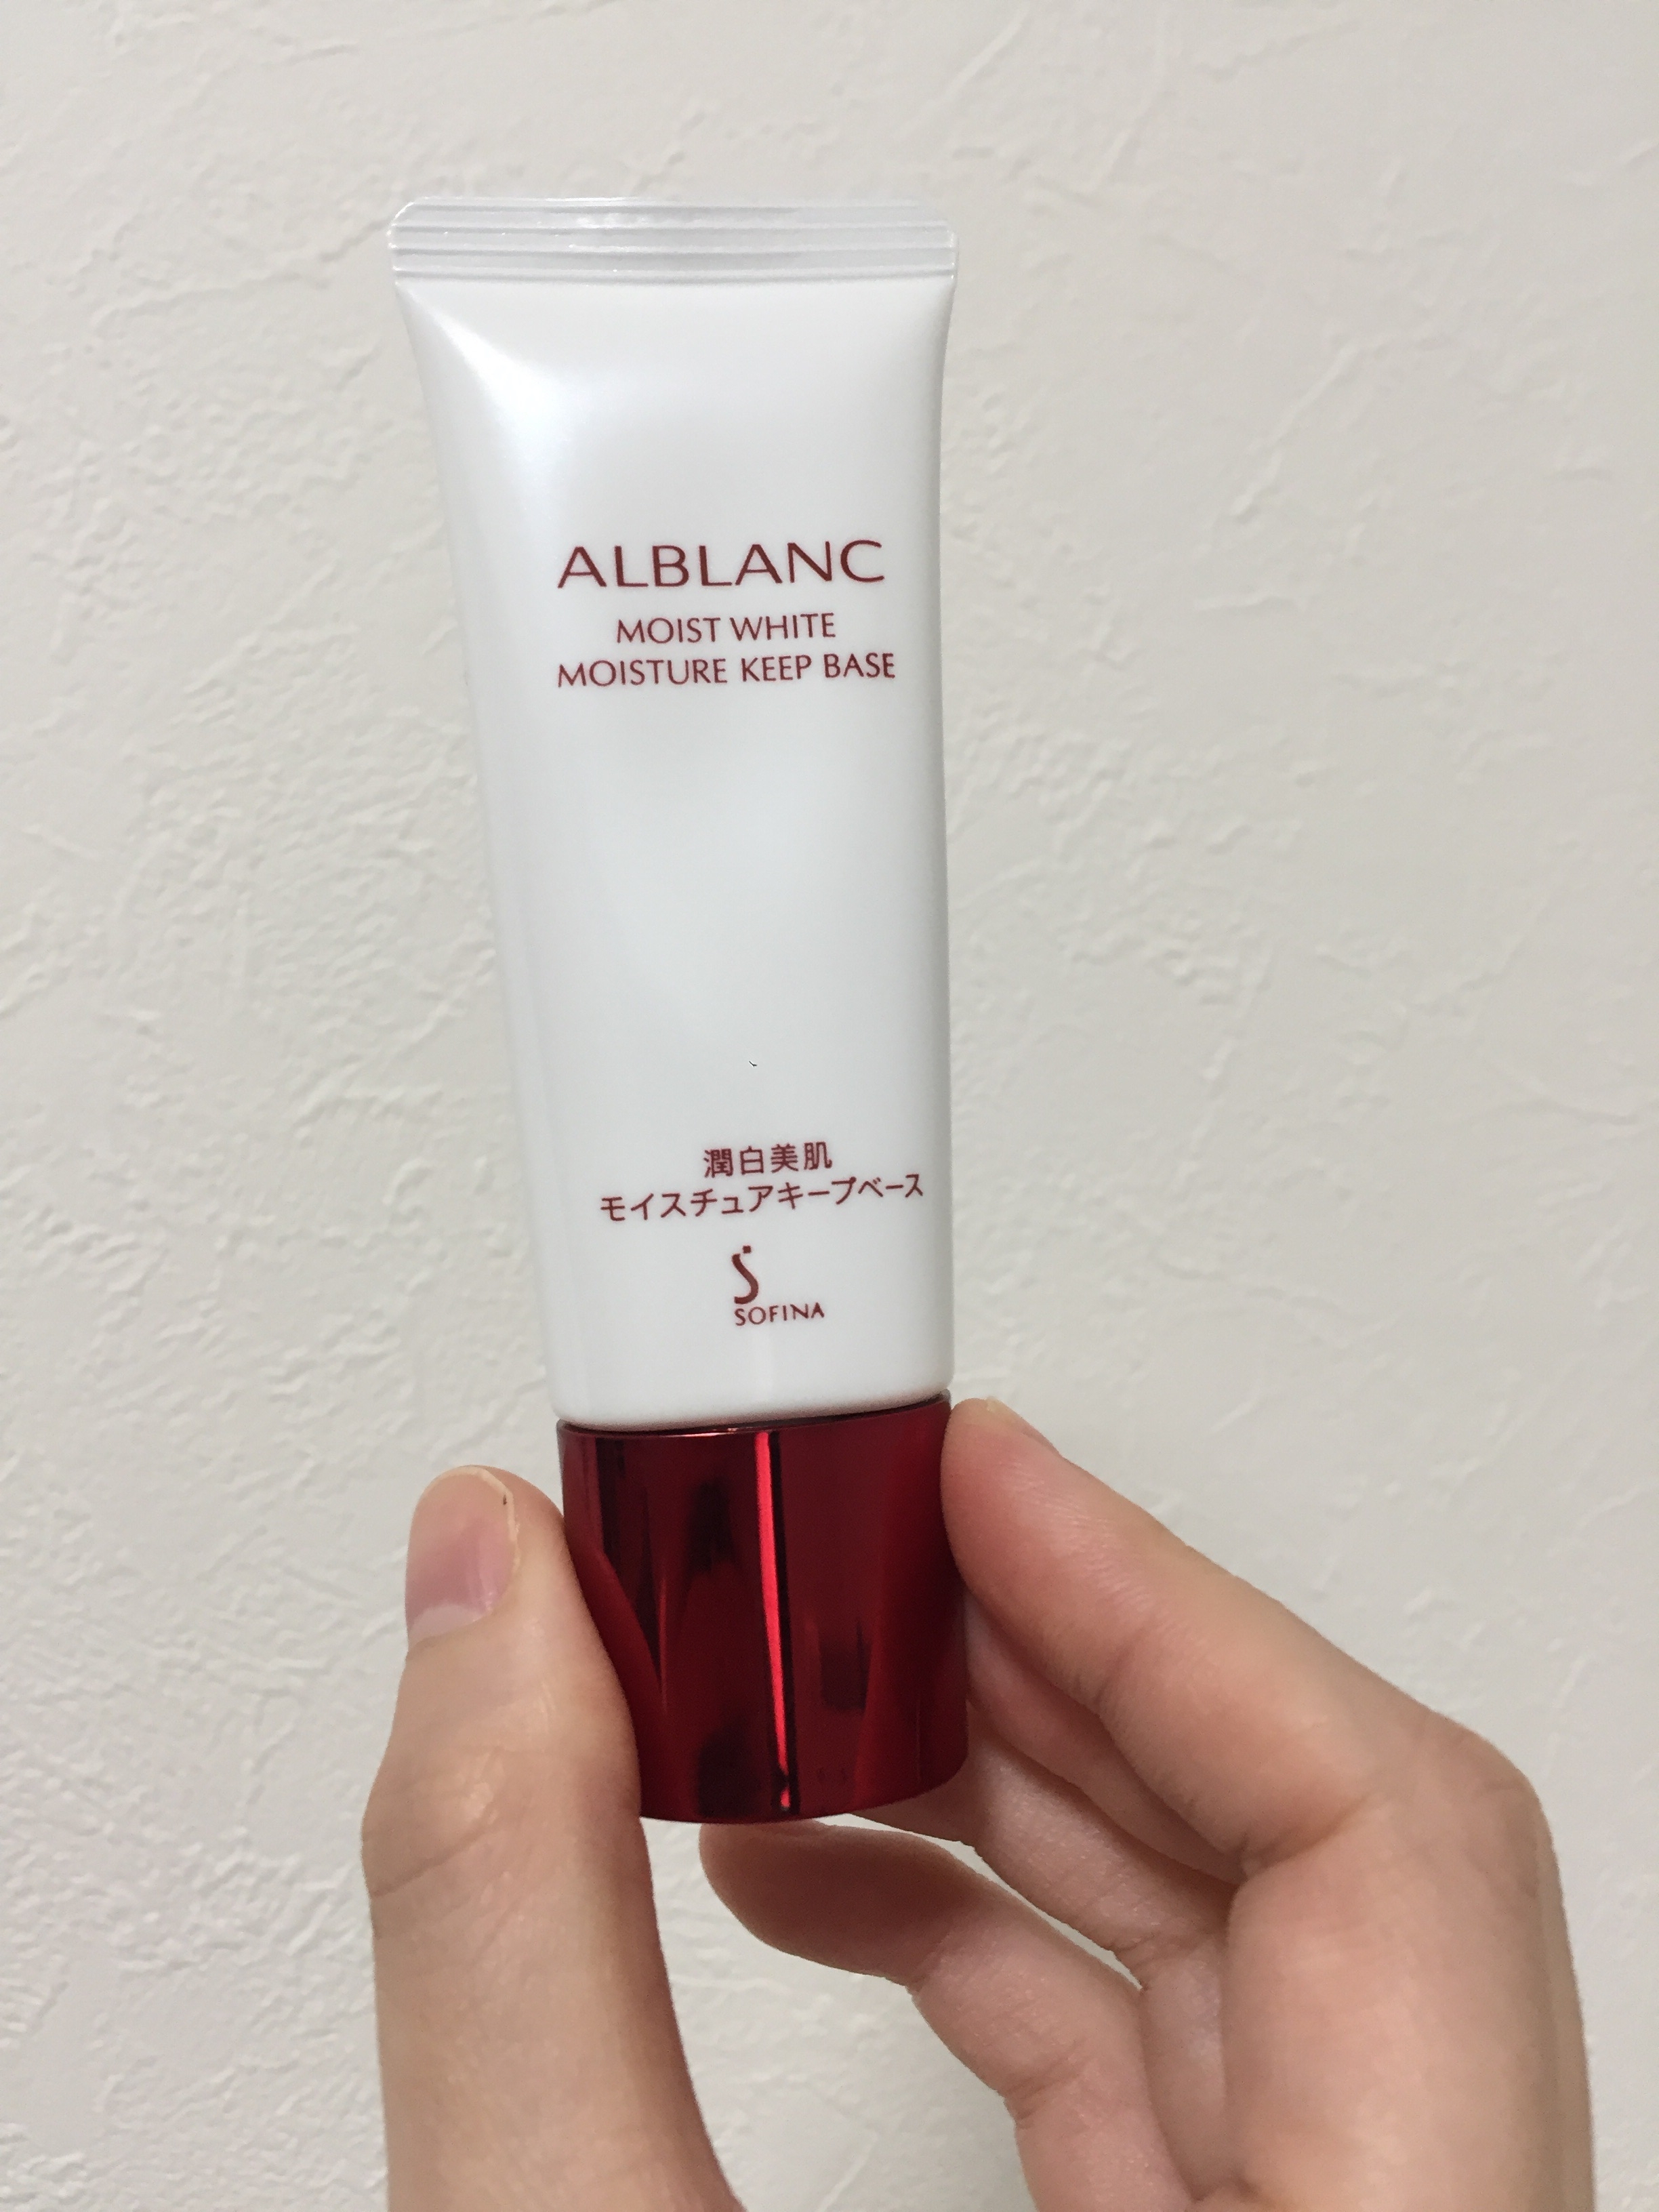 ALBLANC(アルブラン) / 潤白美肌 モイスチュアキープベースの公式商品 